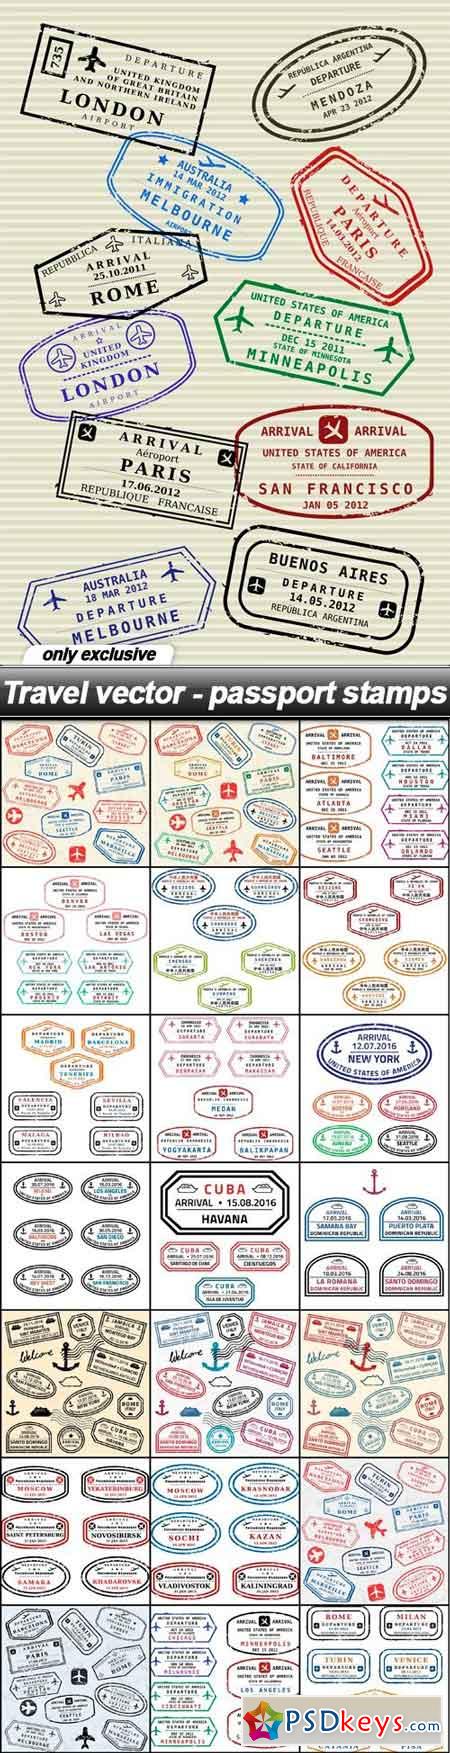 Travel vector - passport stamps - 38 EPS